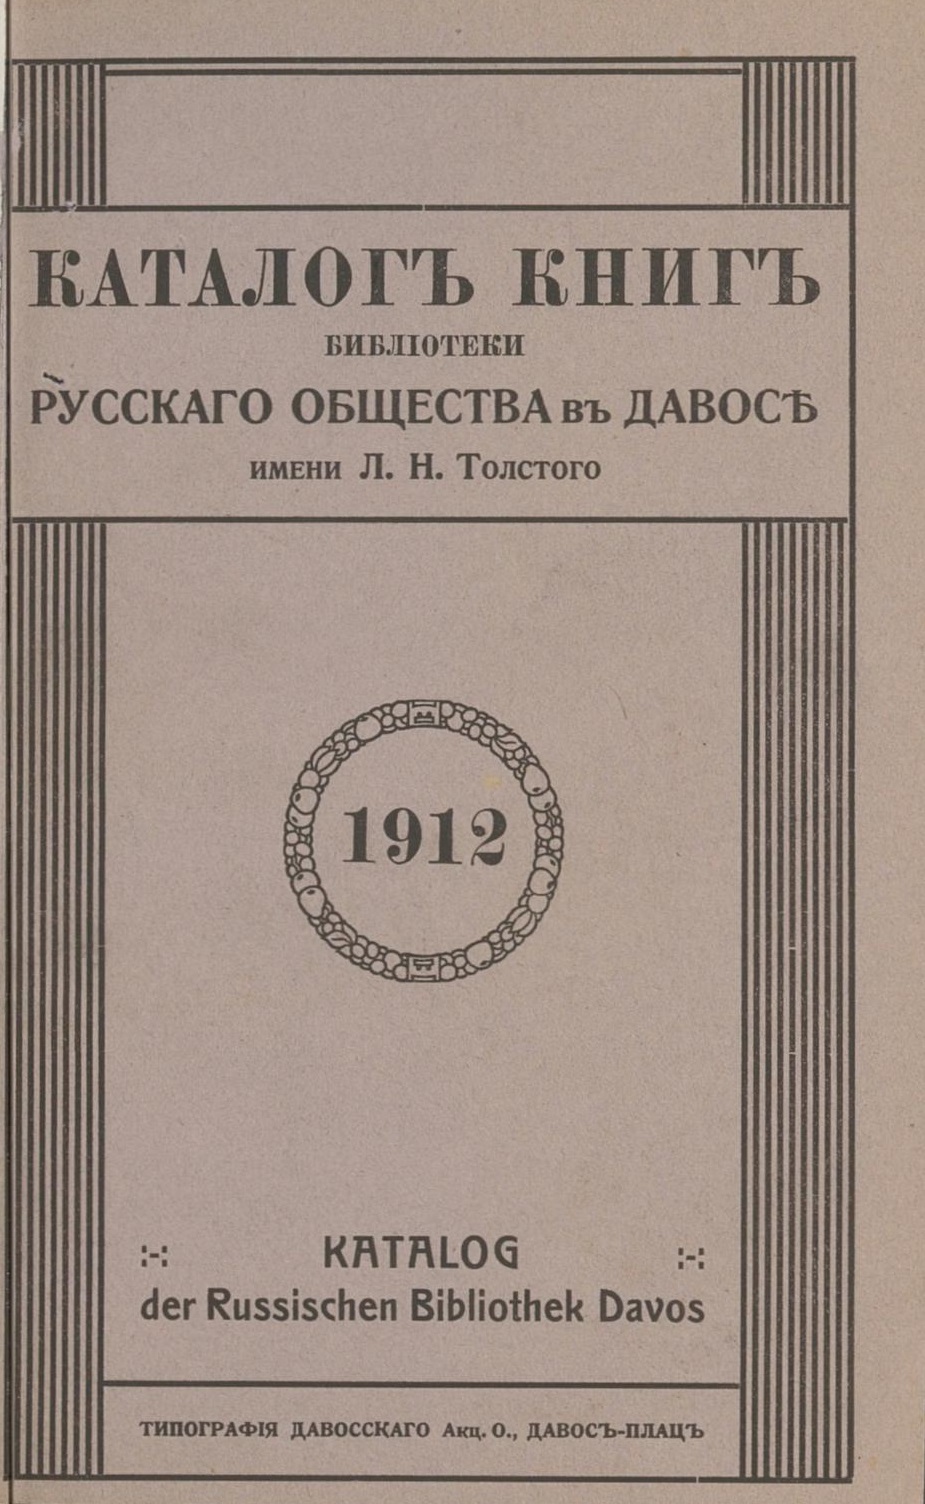 Titelblatt des Katalogs der Russischen Bibliothek Davos (1912)